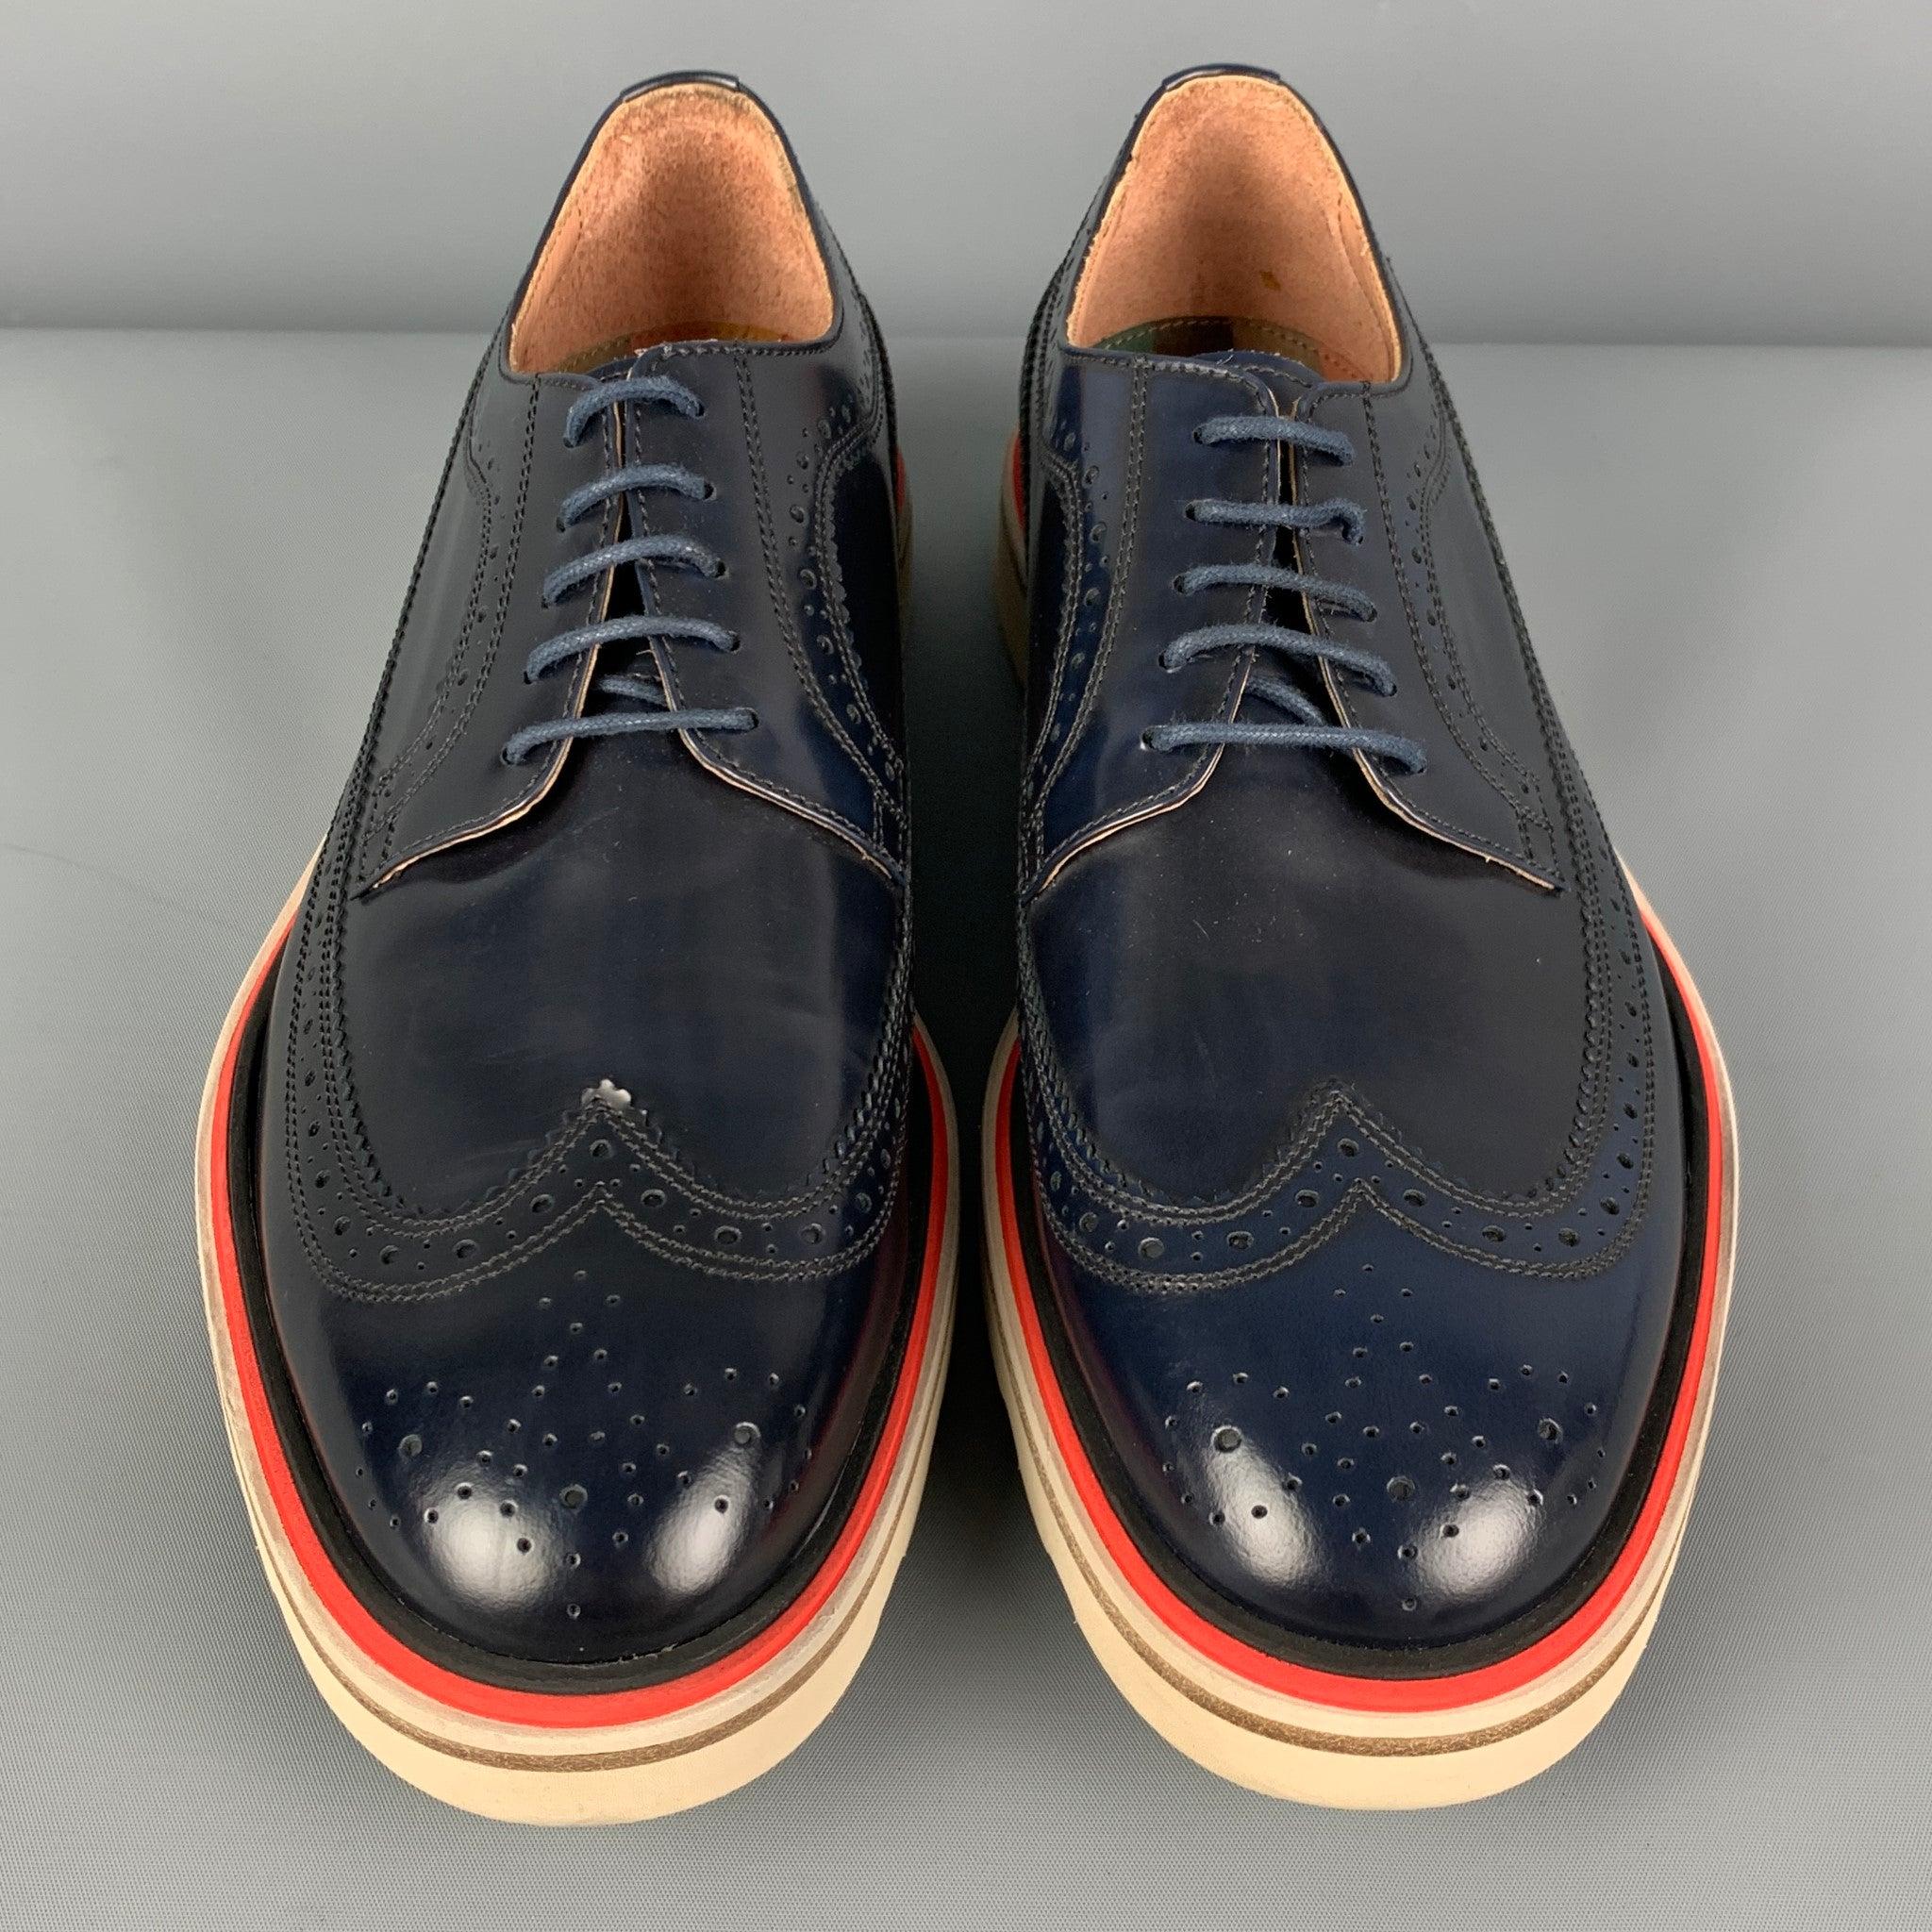 PAUL SMITH - Chaussures à lacets en cuir perforé blanc marine, taille 7,5 Pour hommes en vente